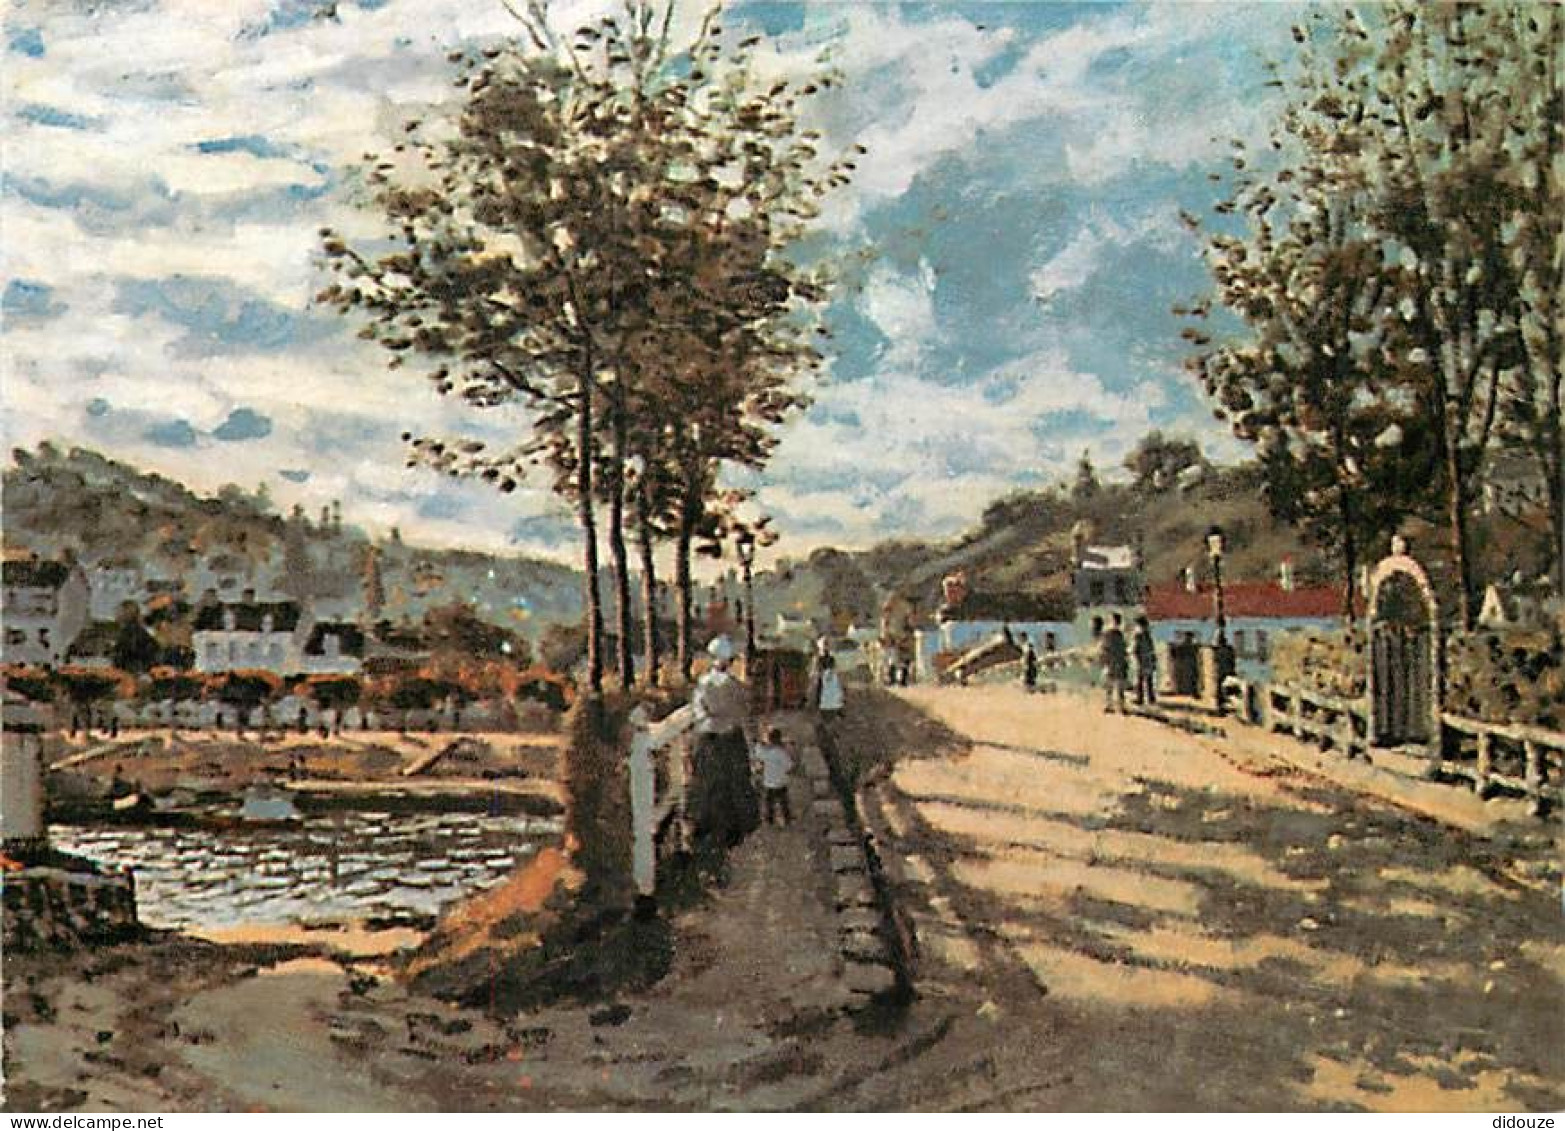 Art - Peinture - Claude Monet - La Seine à Bougival, 1869 - The Seine At Bougival, 1869 - Carte Neuve - CPM - Voir Scans - Schilderijen